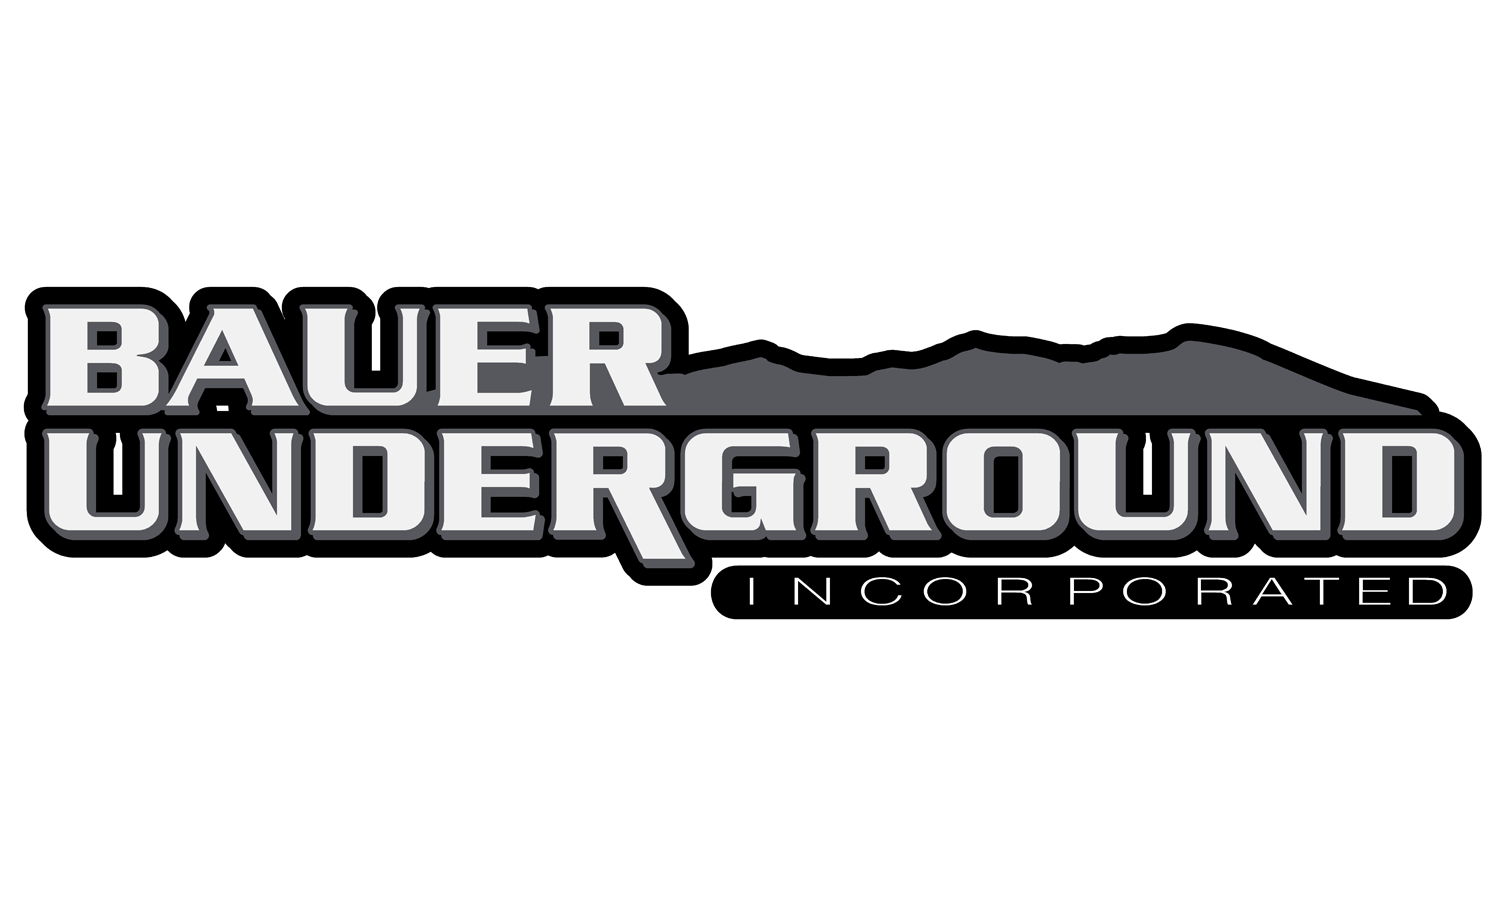 Bauer Underground